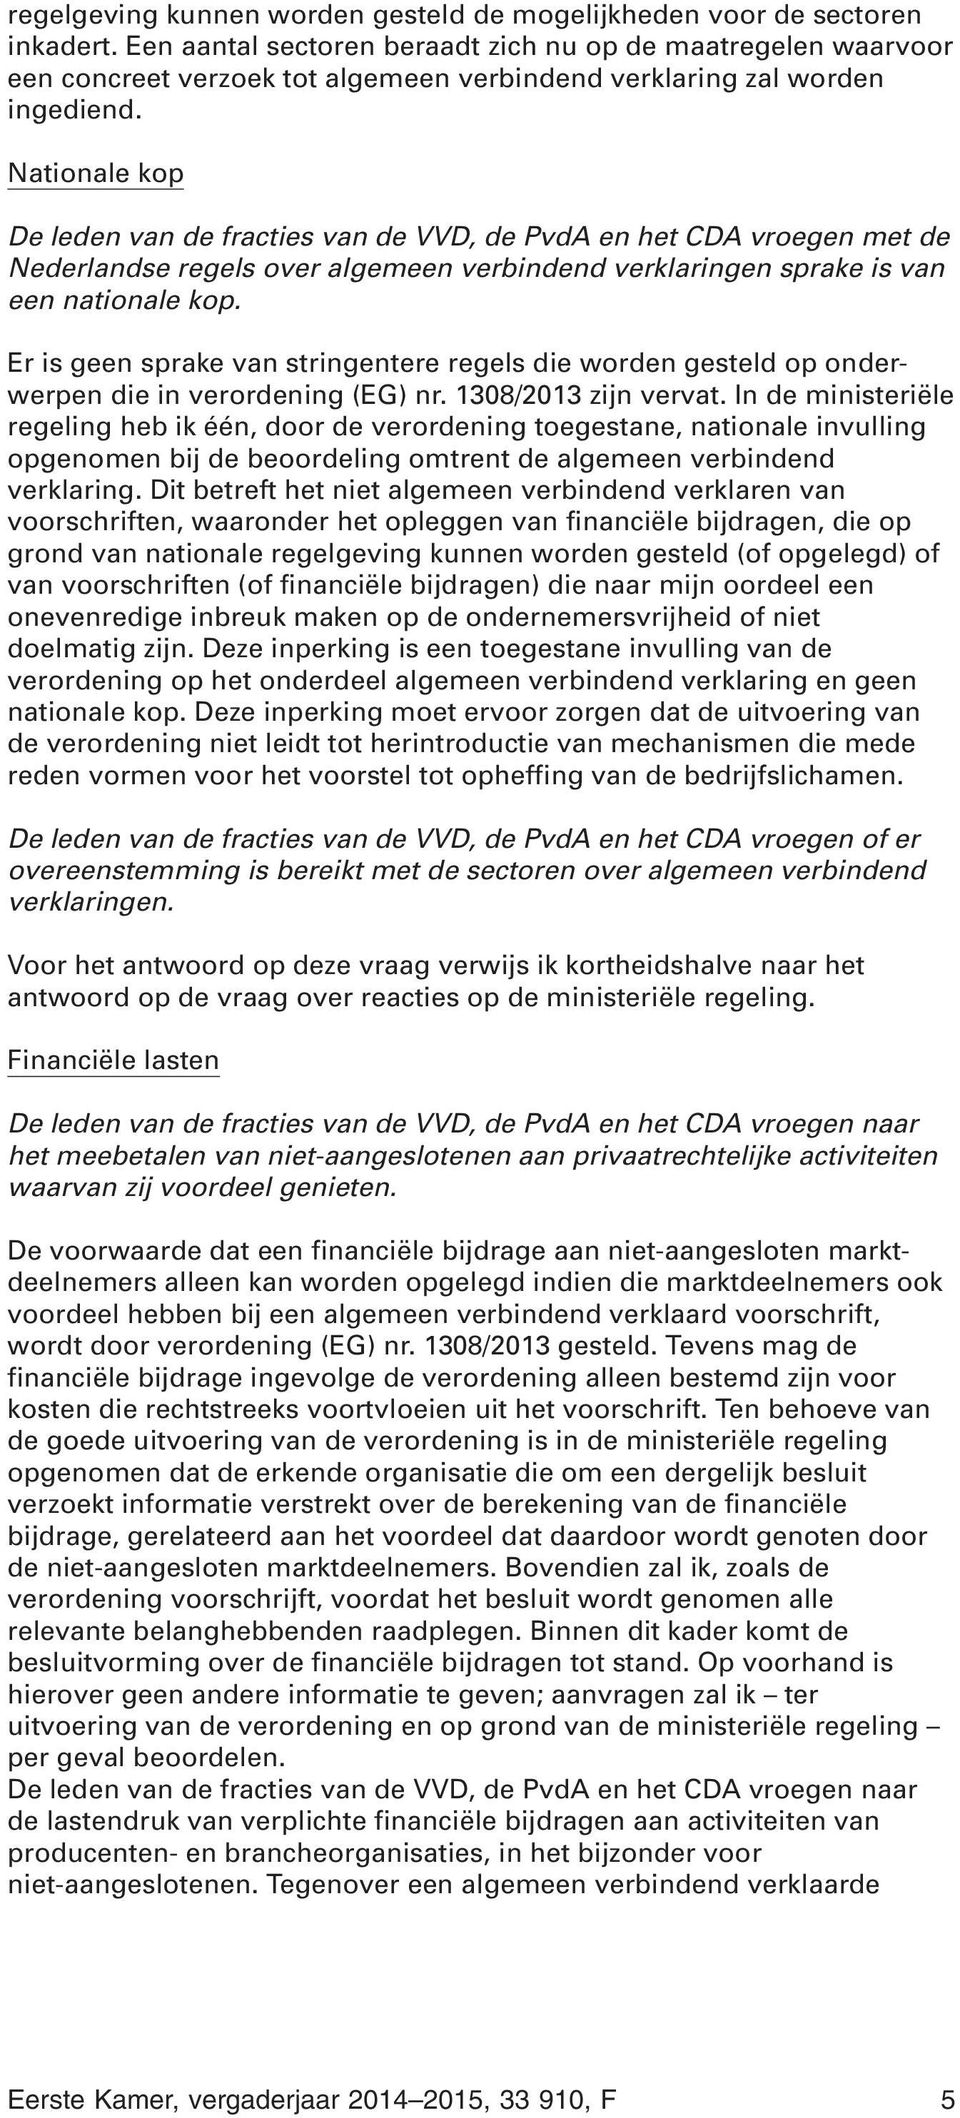 Nationale kop De leden van de fracties van de VVD, de PvdA en het CDA vroegen met de Nederlandse regels over algemeen verbindend verklaringen sprake is van een nationale kop.